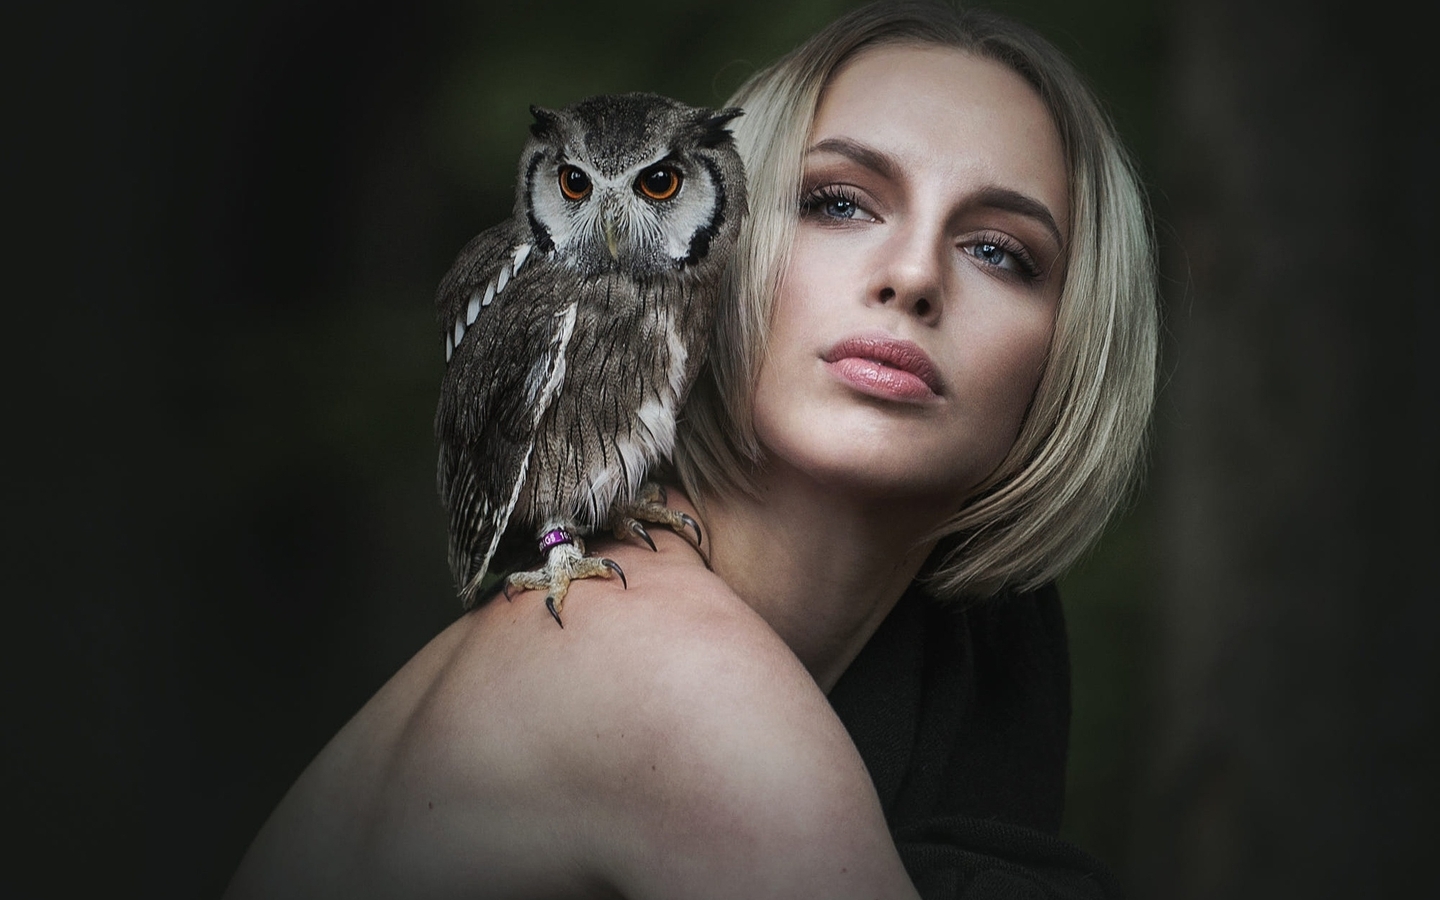 Image: Girl, blonde, face, shoulders, owl, sitting